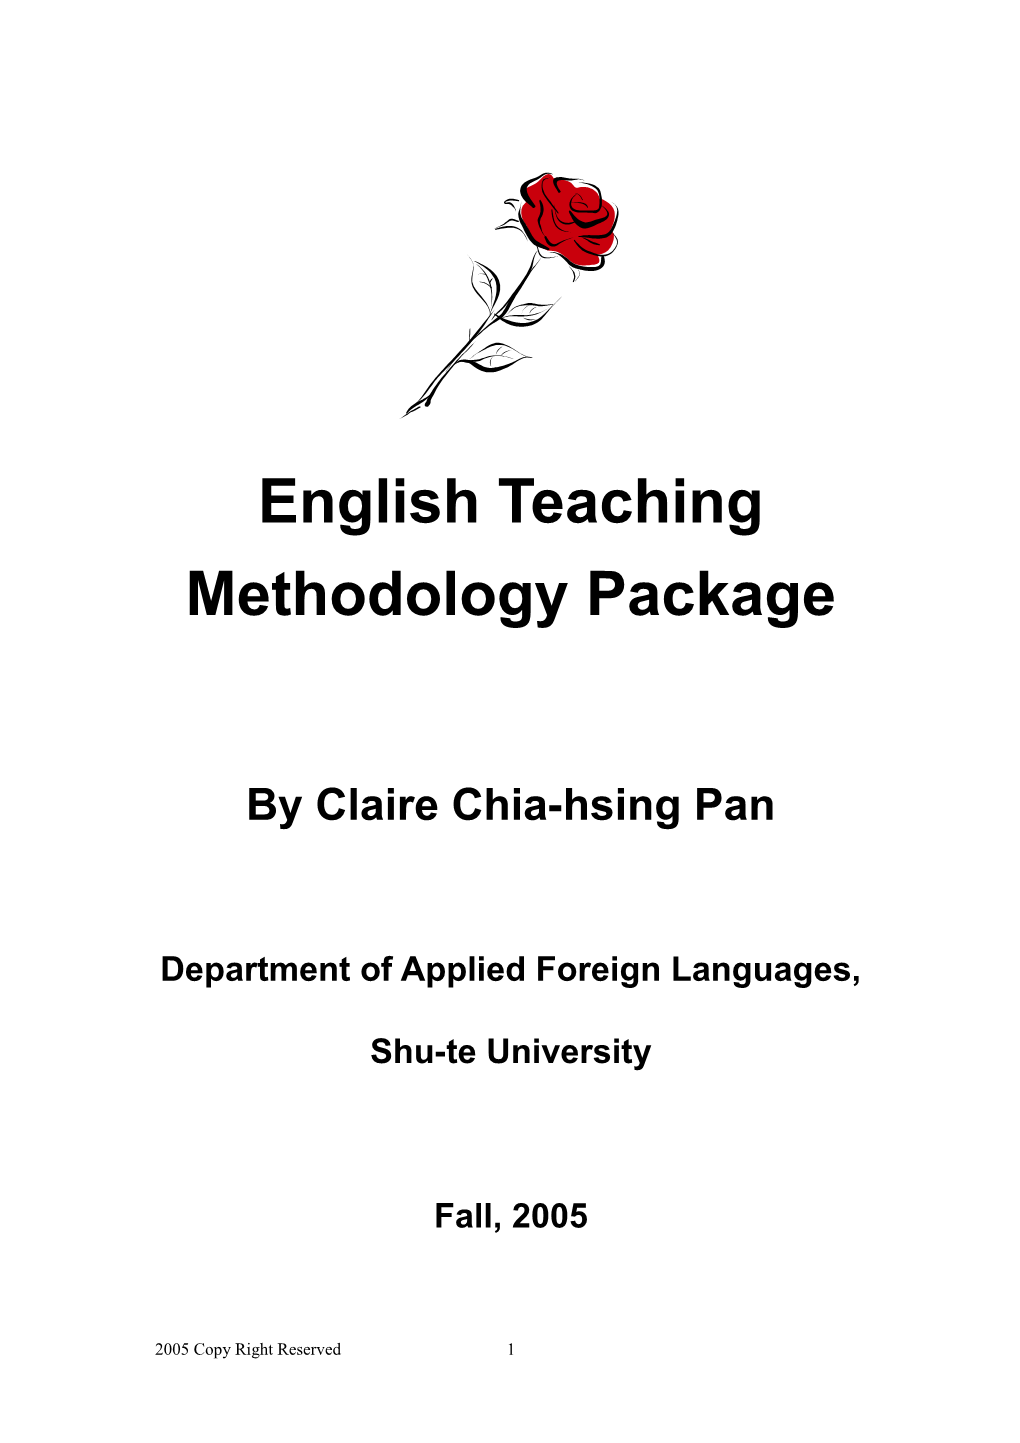 English Teaching Methodology Package